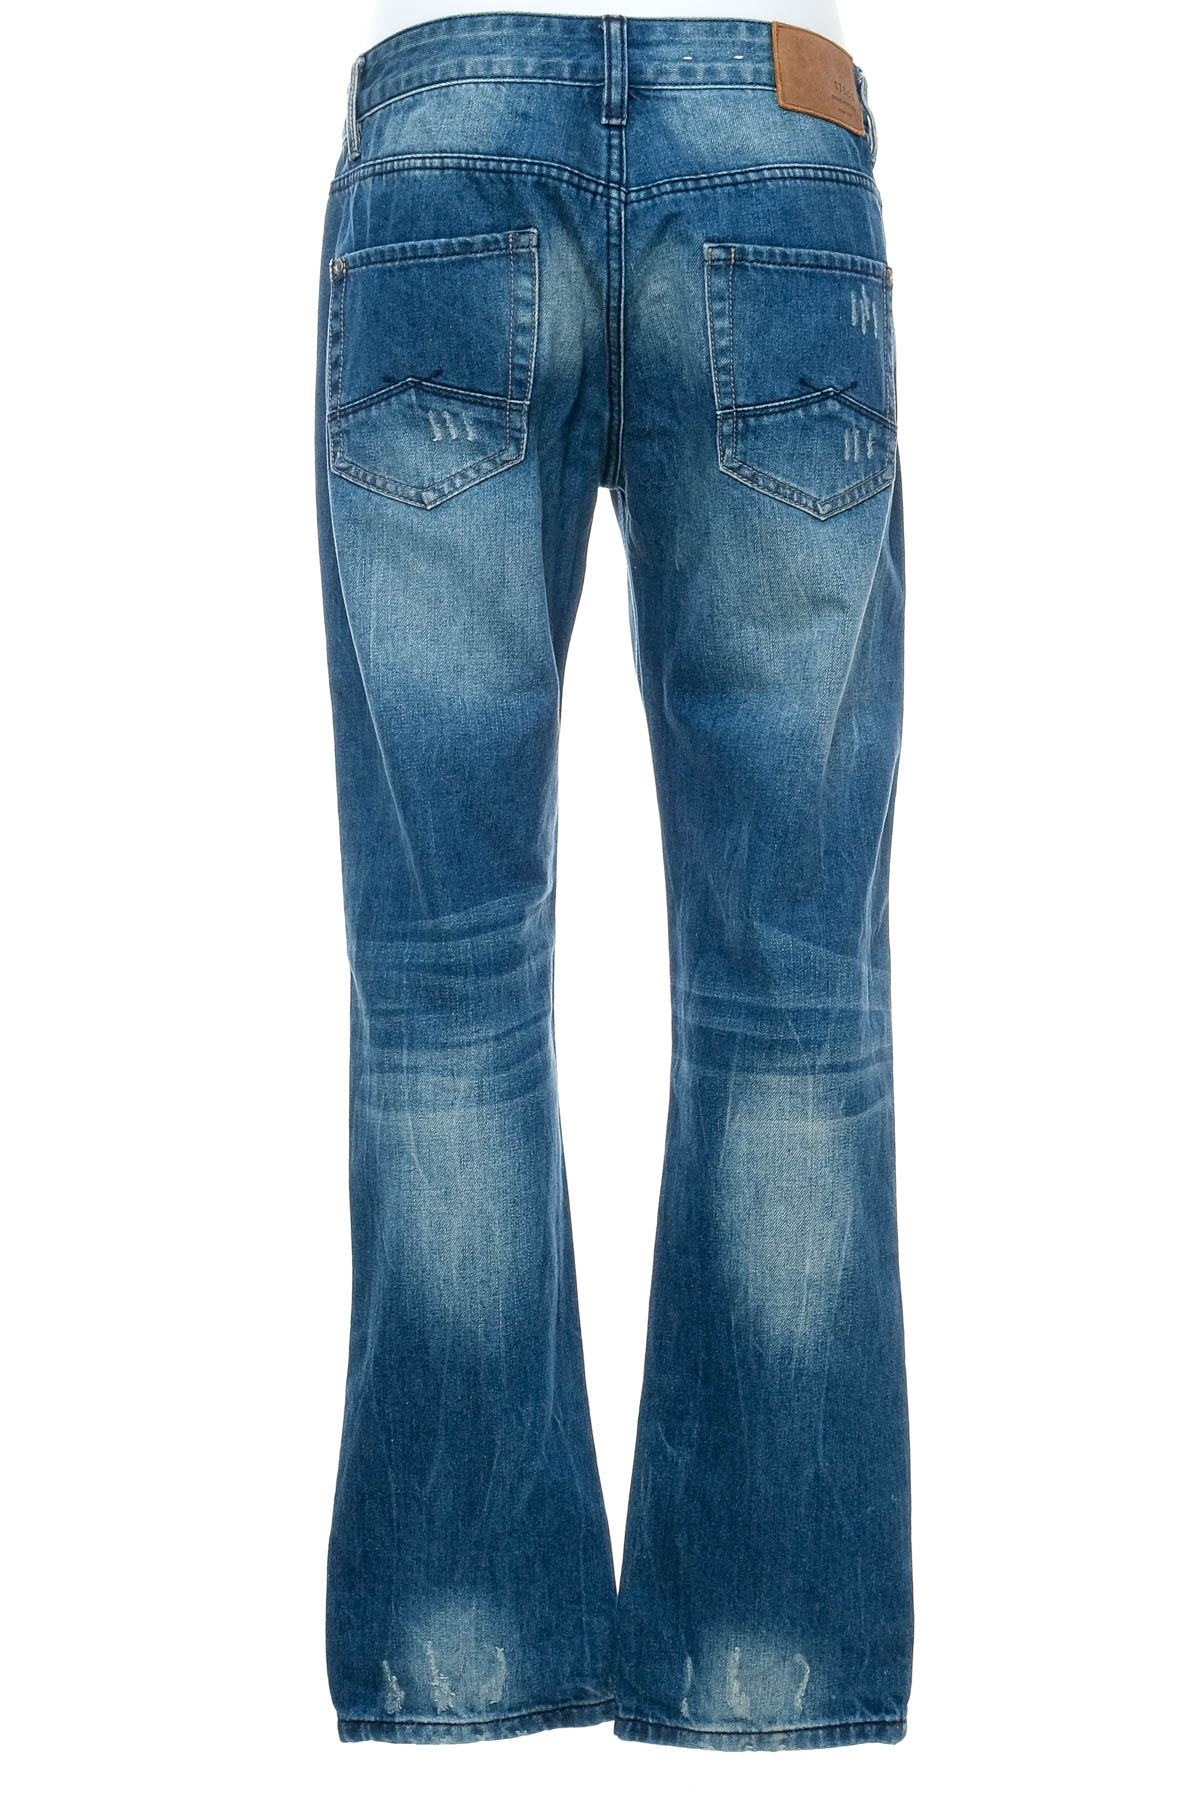 Men's jeans - 17 & Co - 1